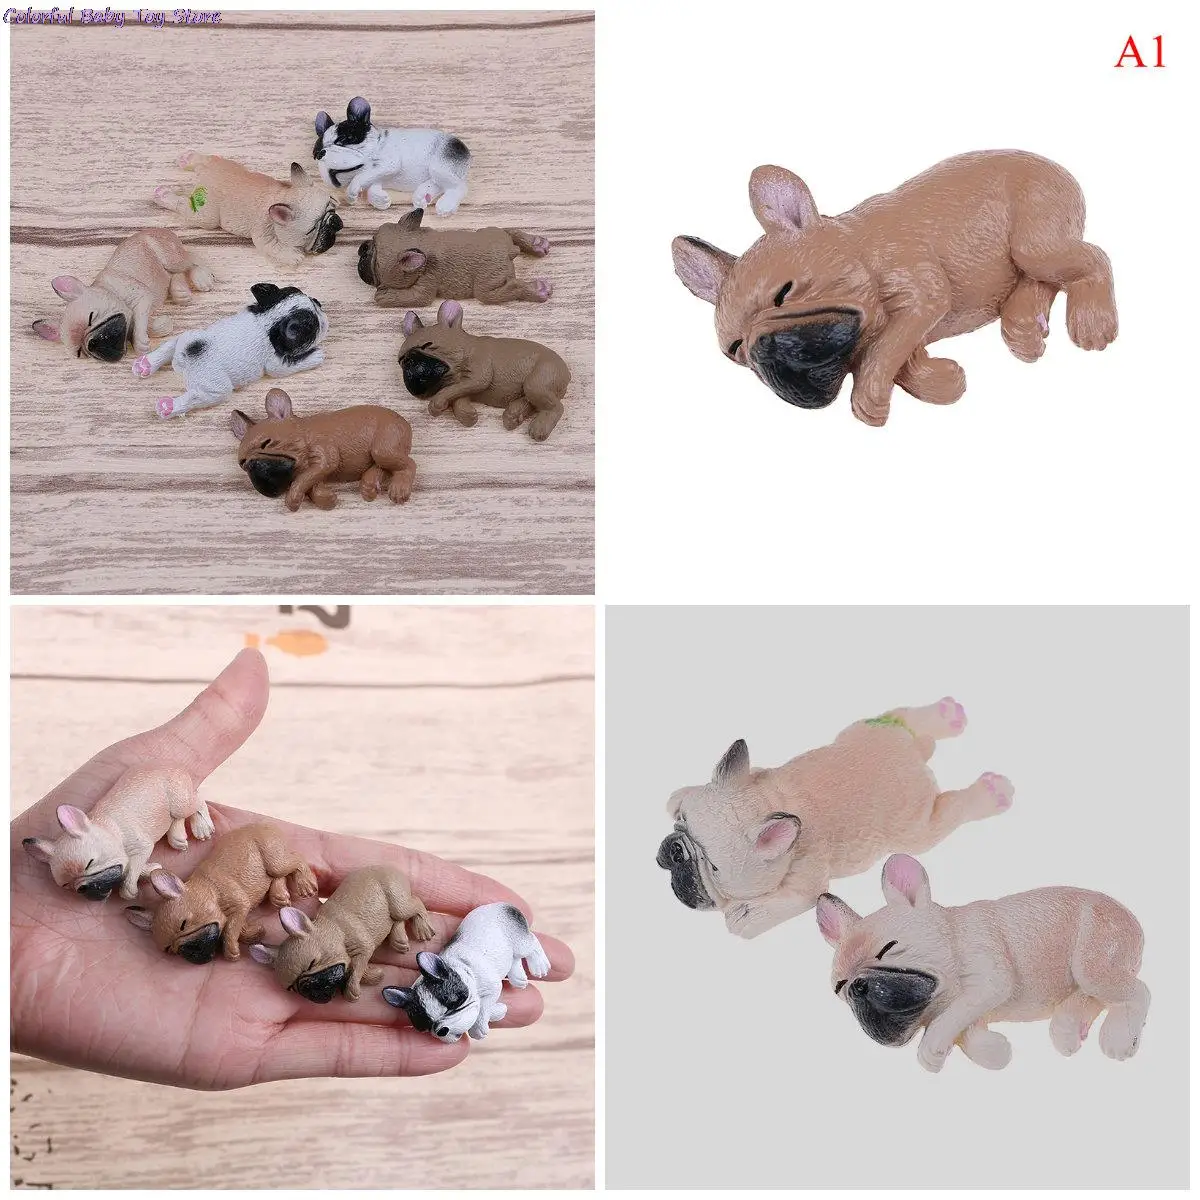 

Animals Dolls Kids GiftsToys Action Figures PVC Model Toy Landscape French Bulldog Sleepy Corgis Dog Decor